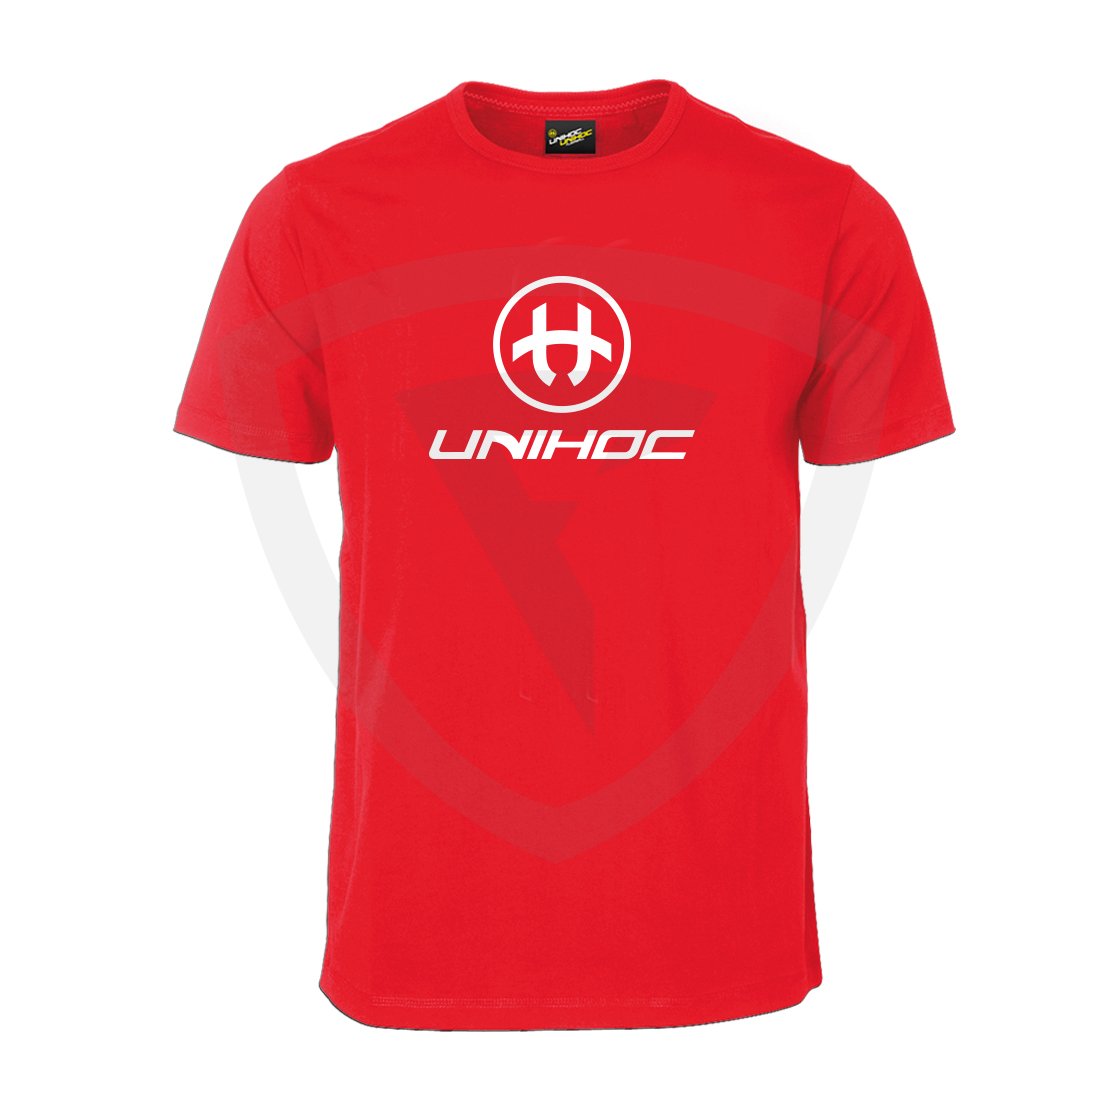 Unihoc T-shirt Storm Red JR 160 červená